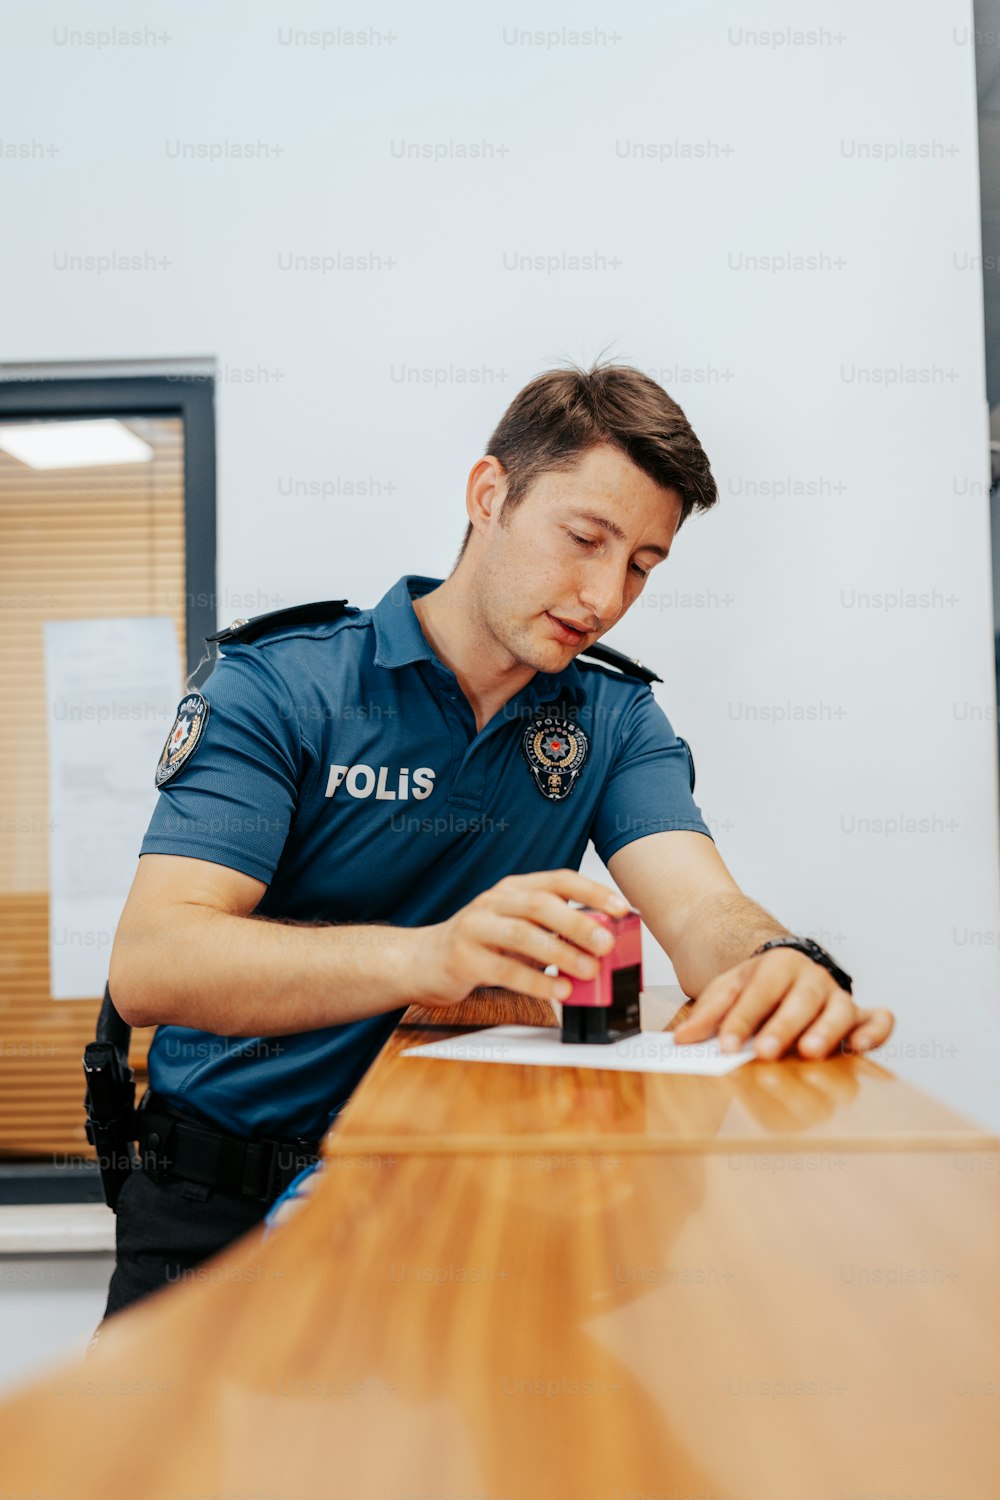 Un oficial de policía sentado en una mesa escribiendo en un pedazo de papel